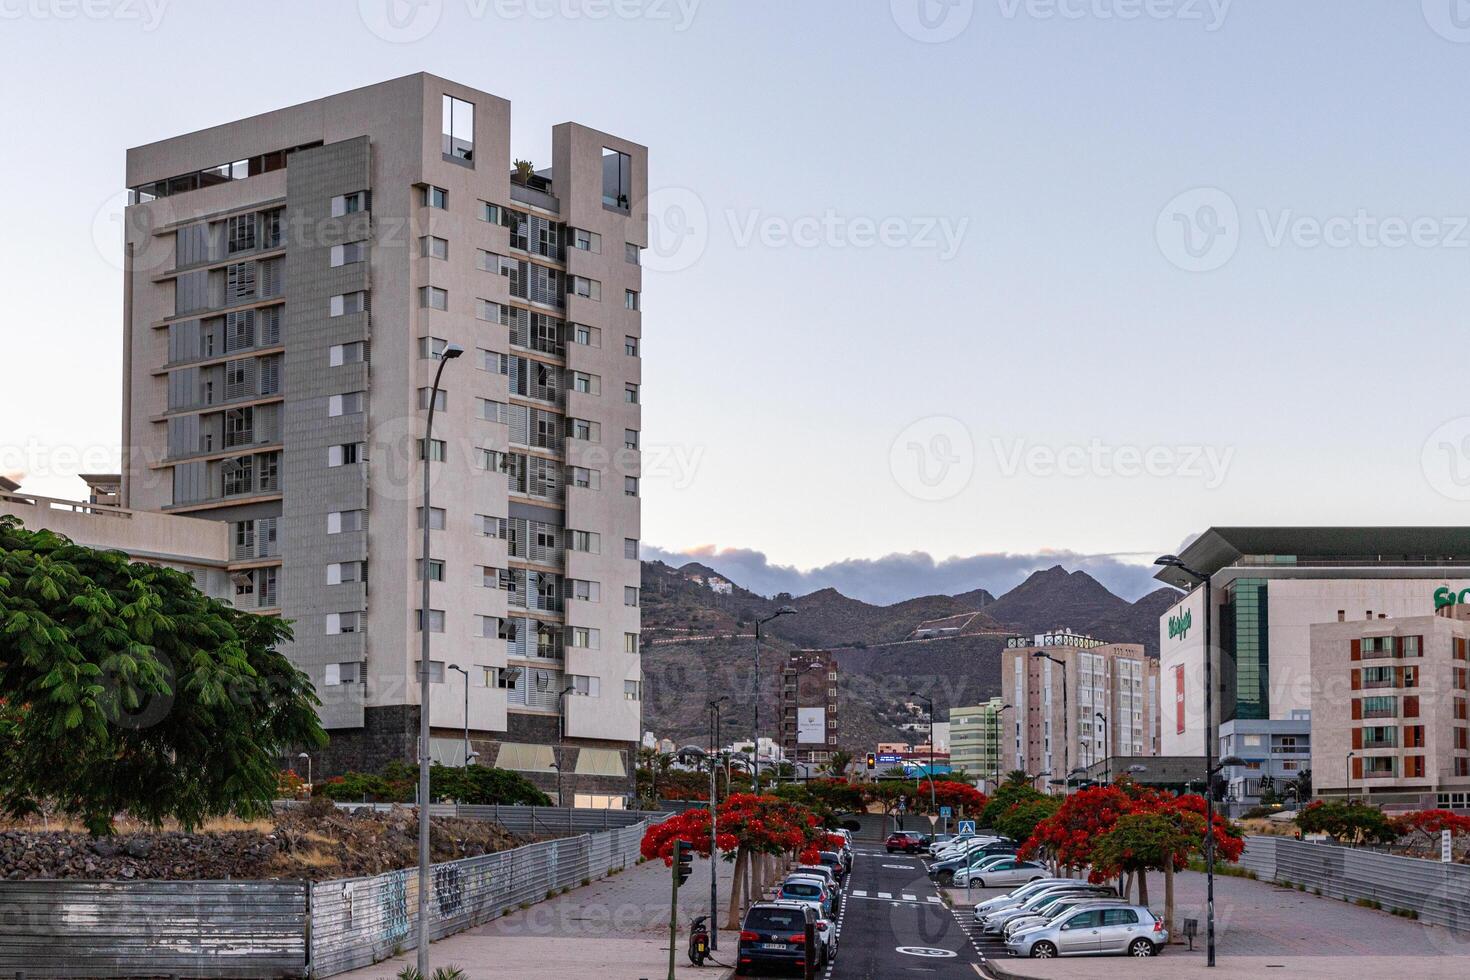 Urbain rue vue avec moderne bâtiments, garé voitures, et loin montagnes à crépuscule dans Père Noël cruz de Tenerife photo